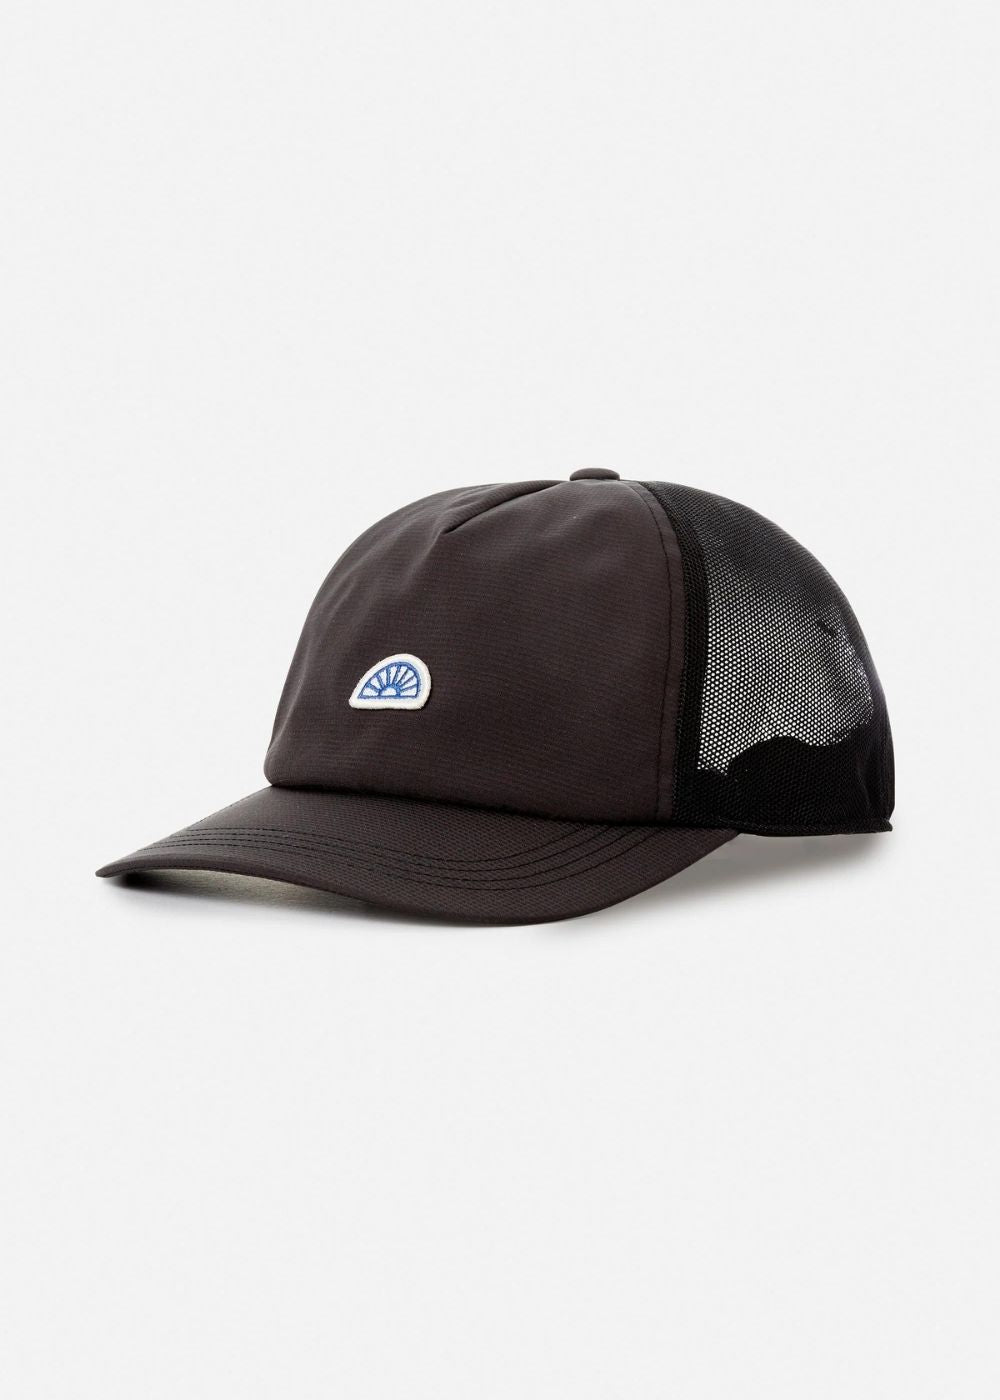 OTG Sun Hat -  כובע מצחייה מנדף זיעה שחור